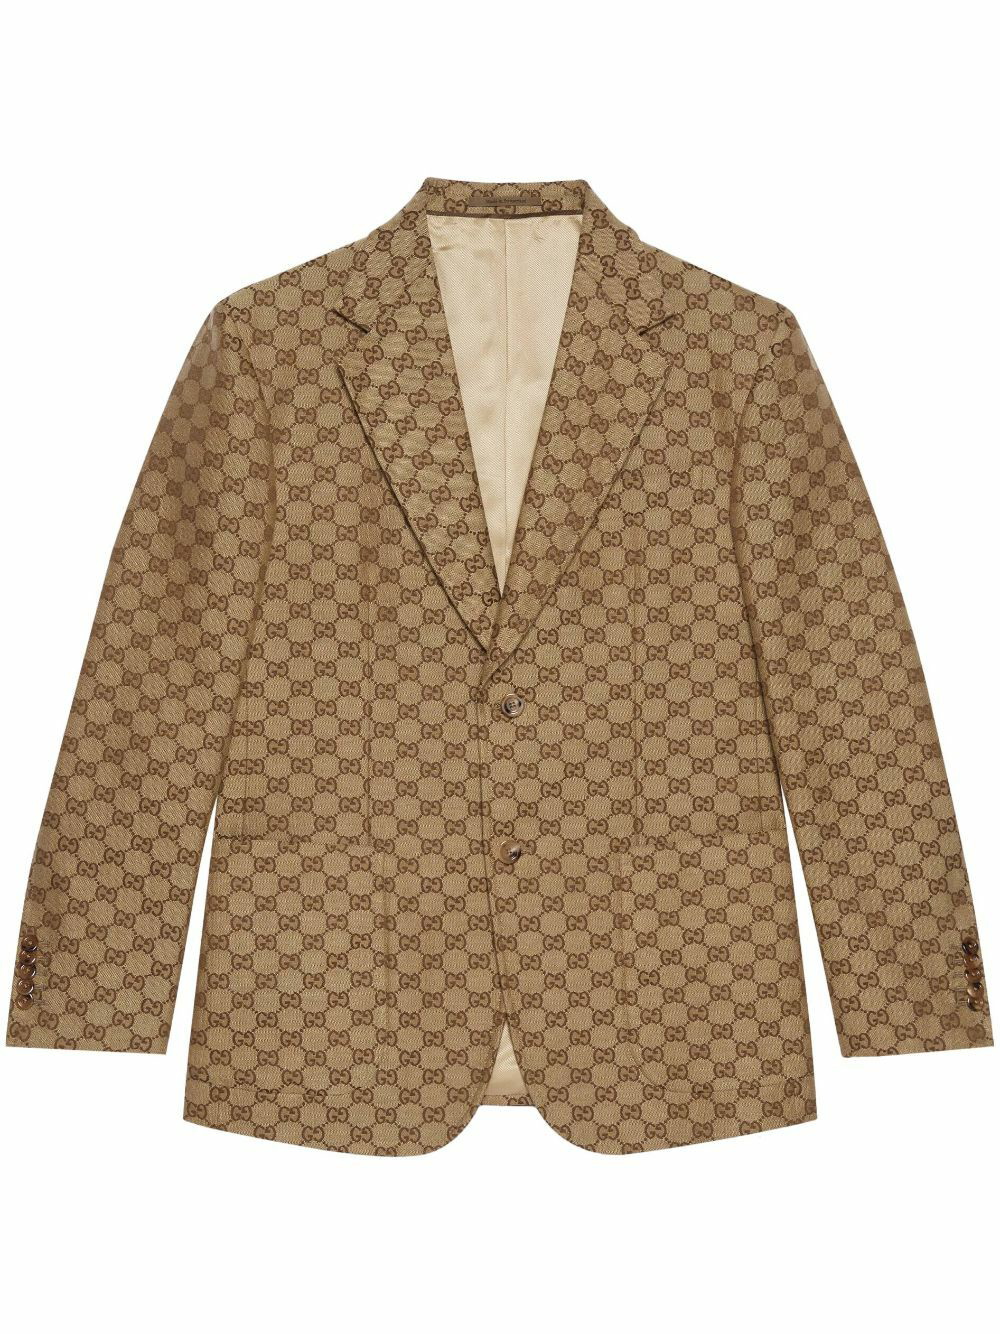 GUCCI - Gg Supreme Single-breasted Blazer Jacket Gucci